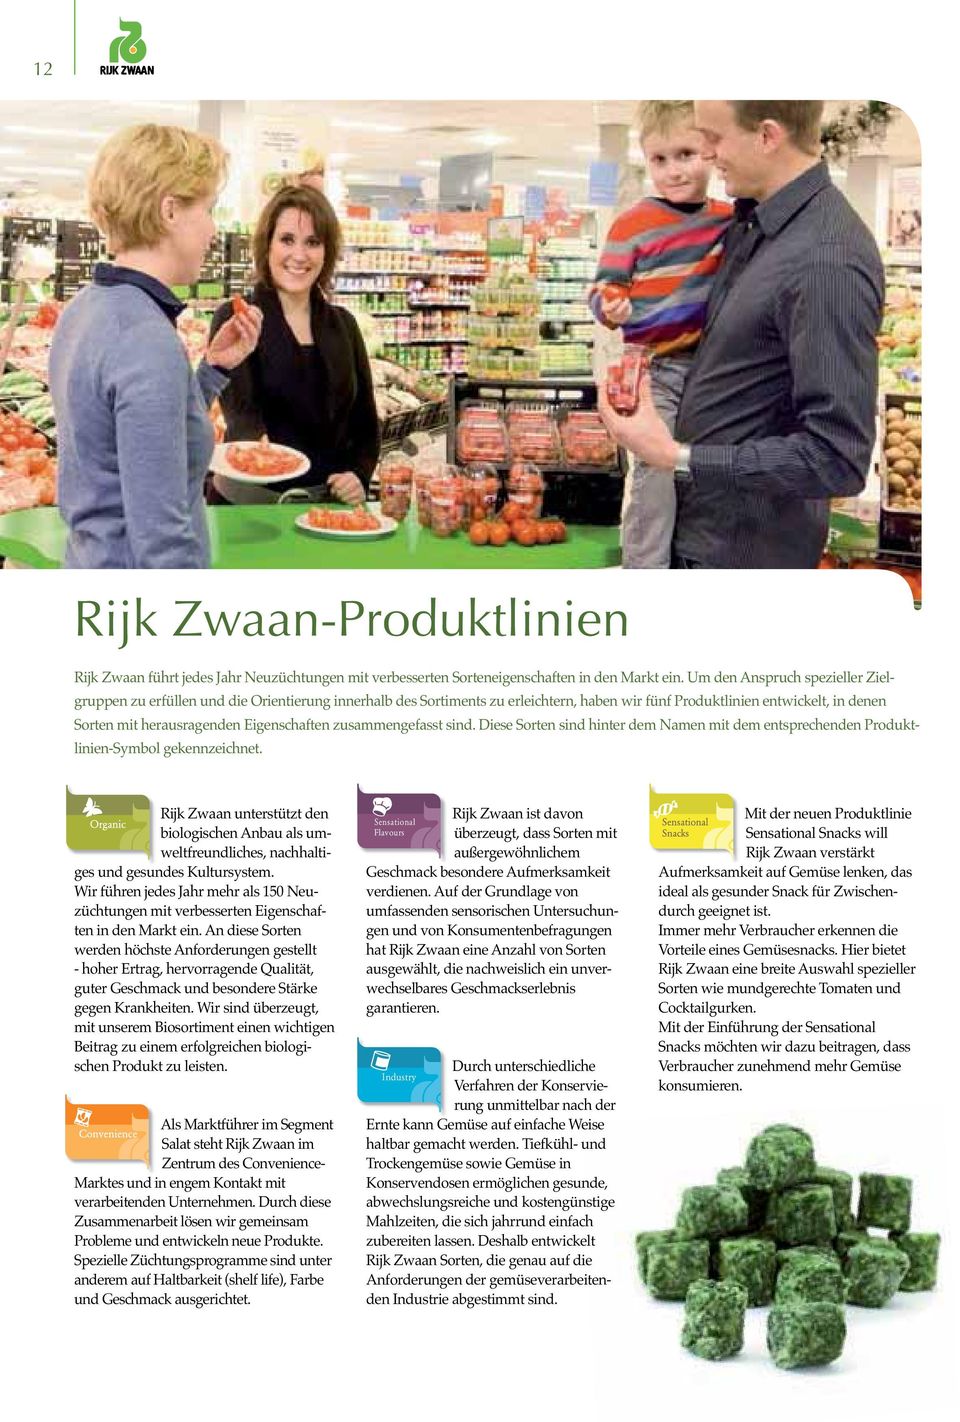 Rijk Zwaan unterstützt den biologischen Anbau als um - weltfreundliches, nachhaltiges und gesundes Kultursystem.